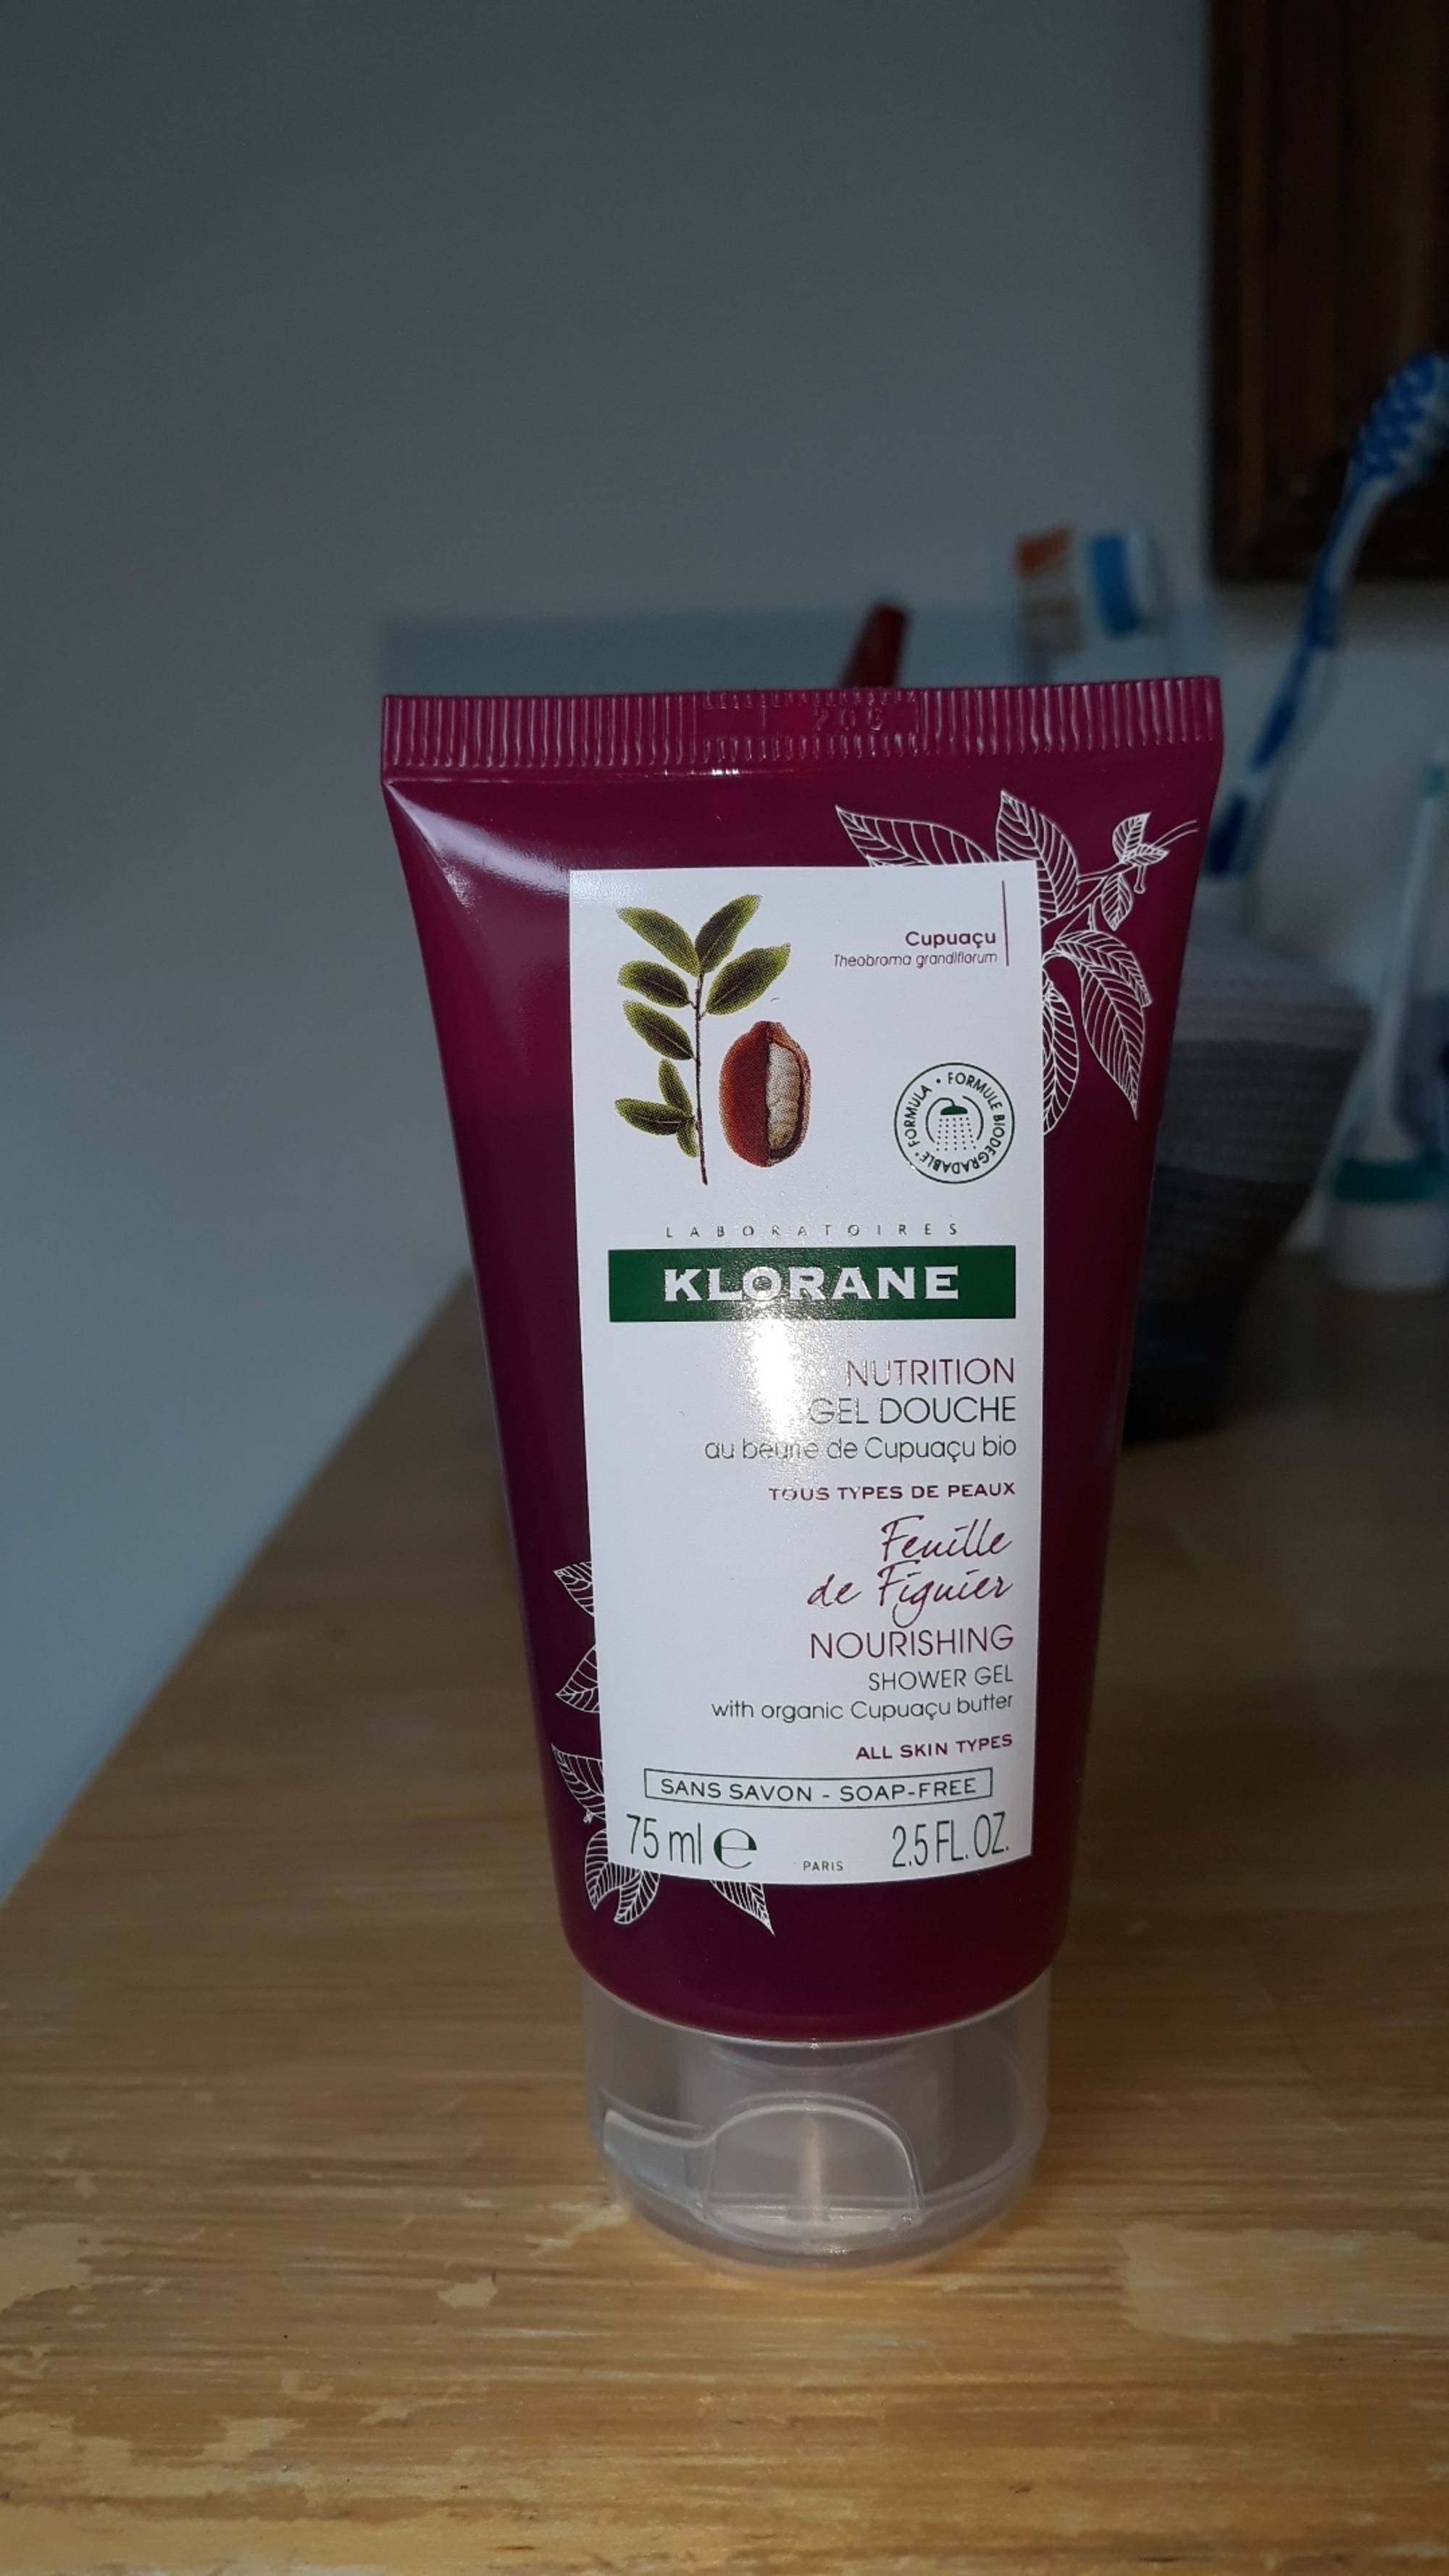 KLORANE - Feuille de figuier - Nutrition gel douche 